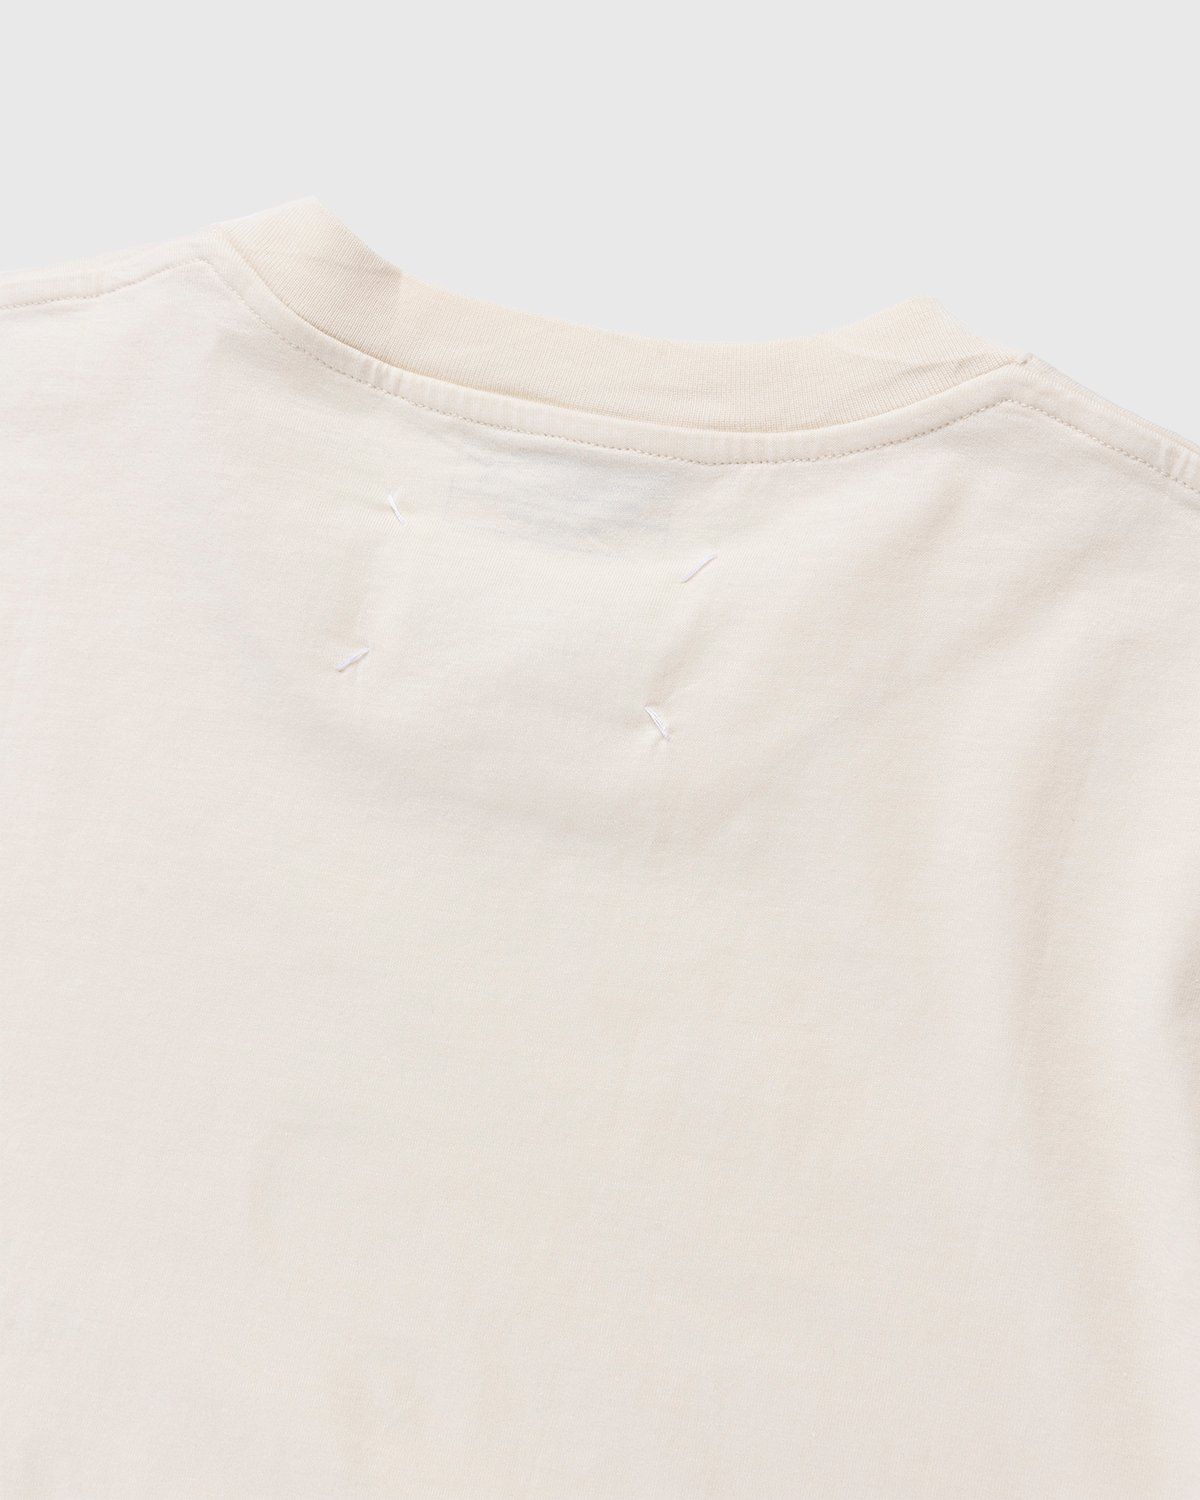 Maison Margiela – Shades of White T-Shirts 3 Pack Multi - T-shirts - White - Image 5